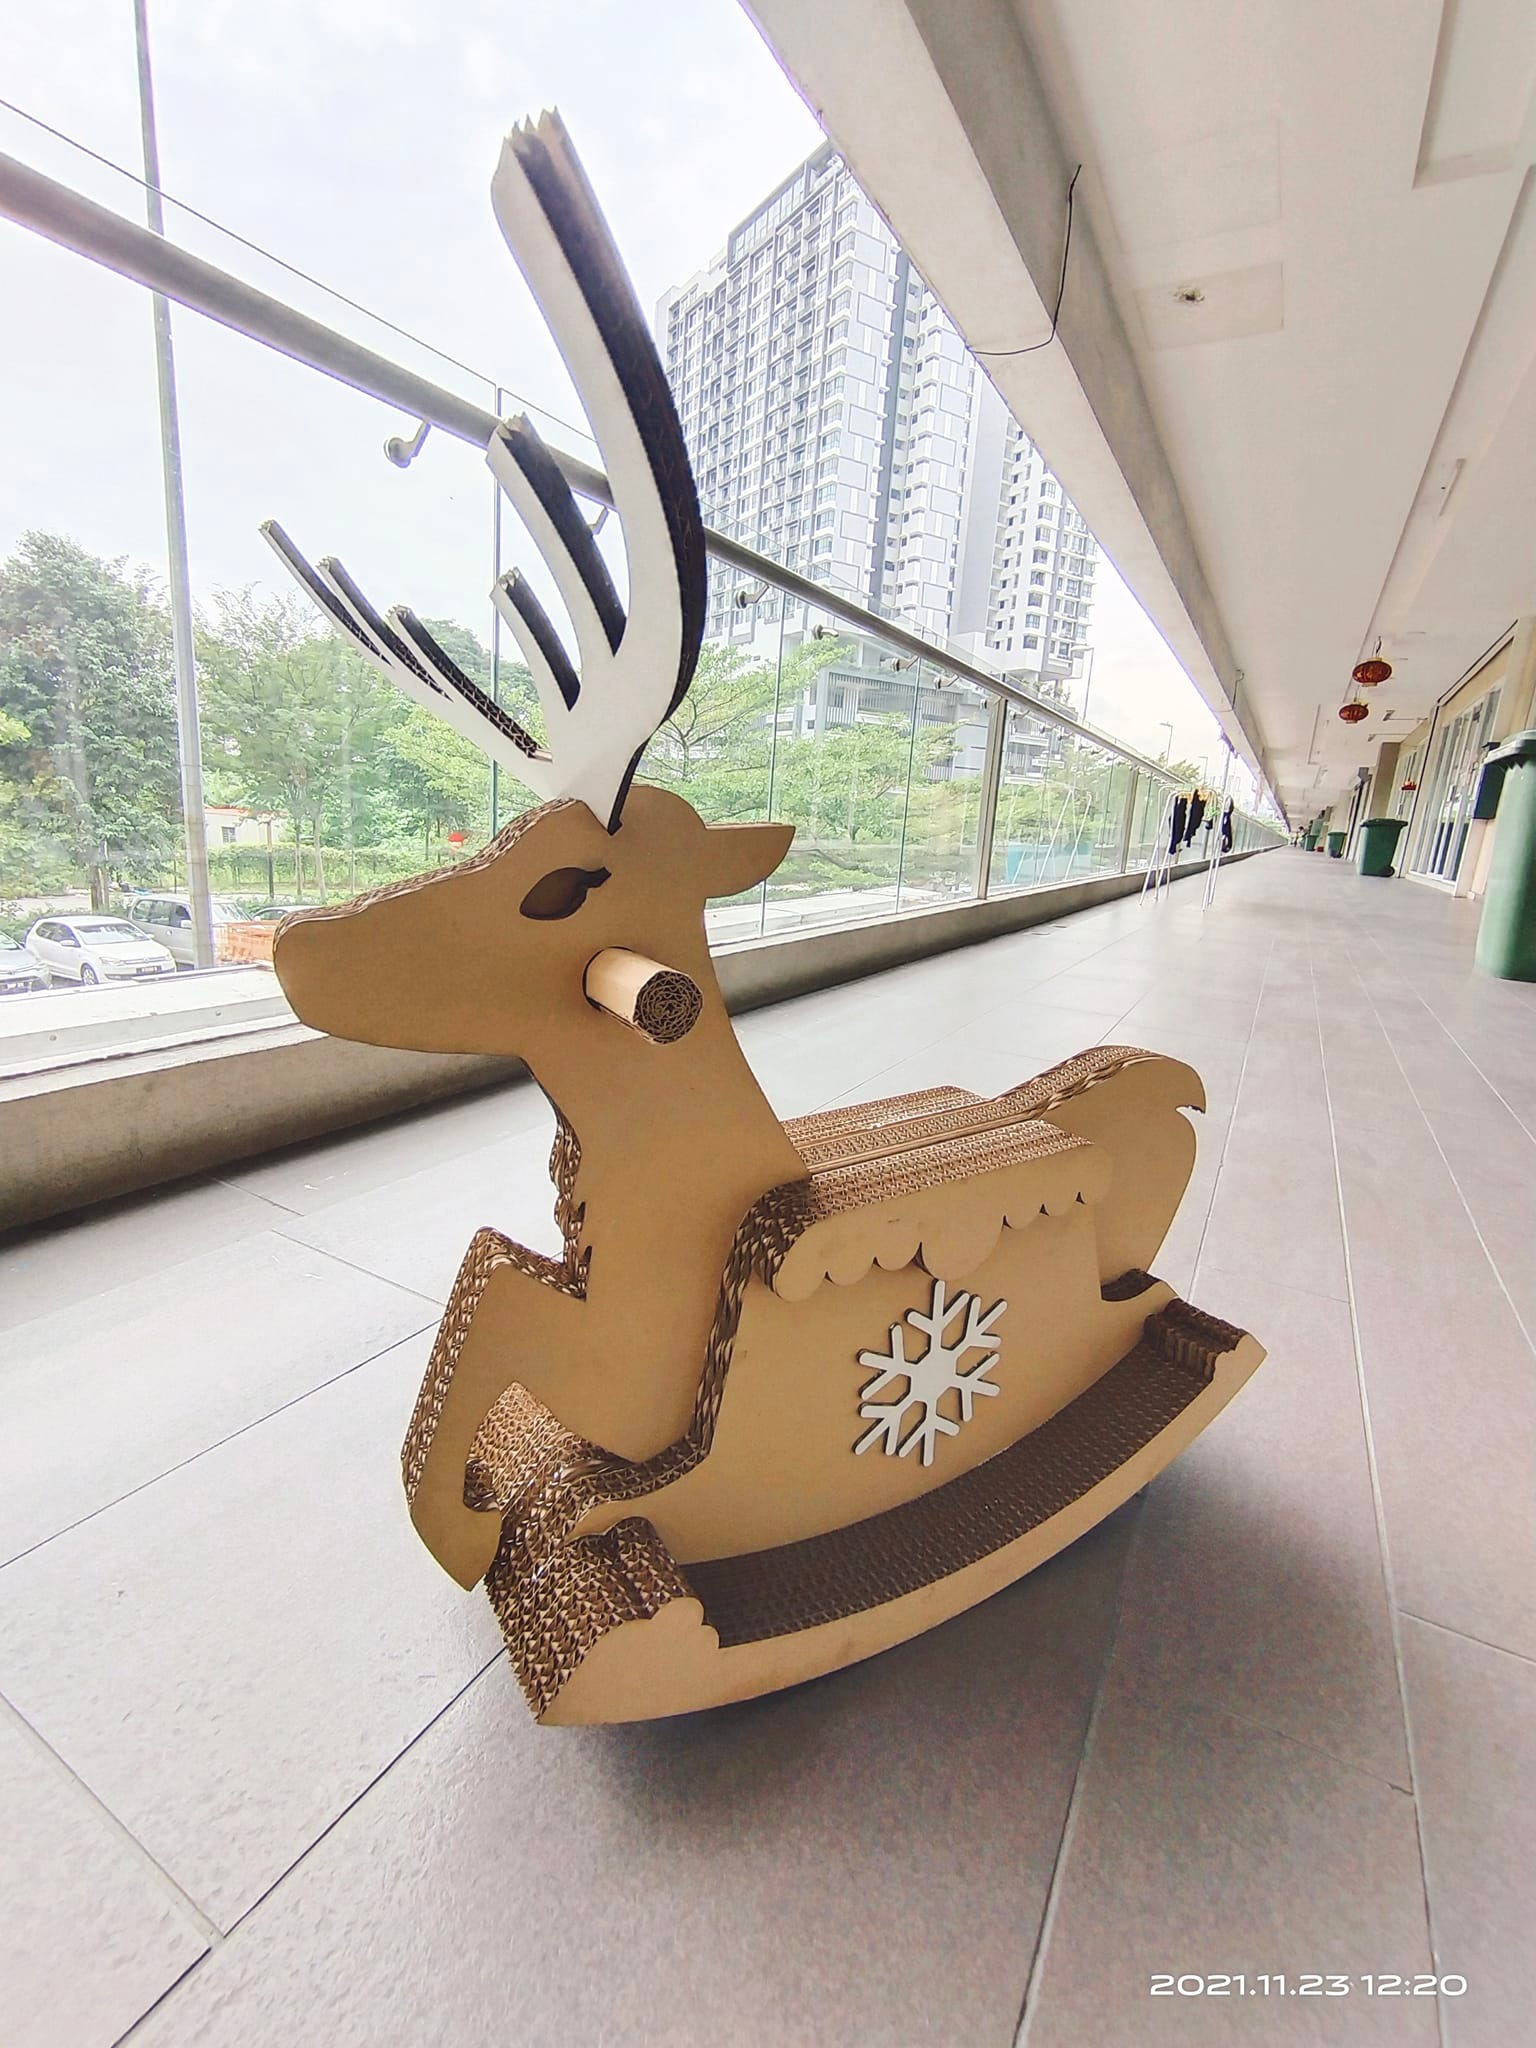 纸皮玩国也制作了圣诞小鹿，让6岁及以下的小朋友能够骑小鹿，提早过圣诞。-图取自“有你市集”脸书-